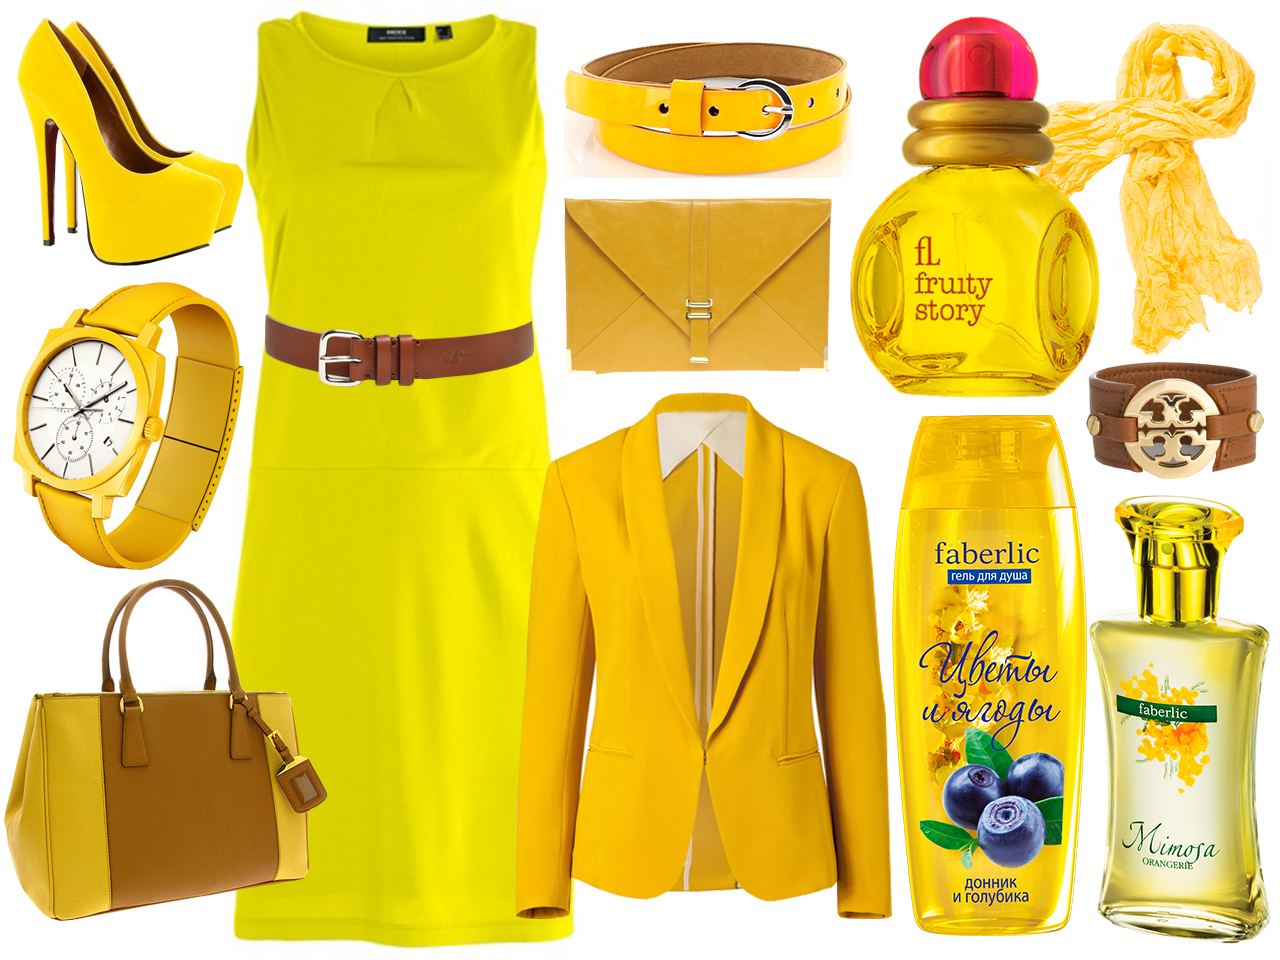 Желтая одежда